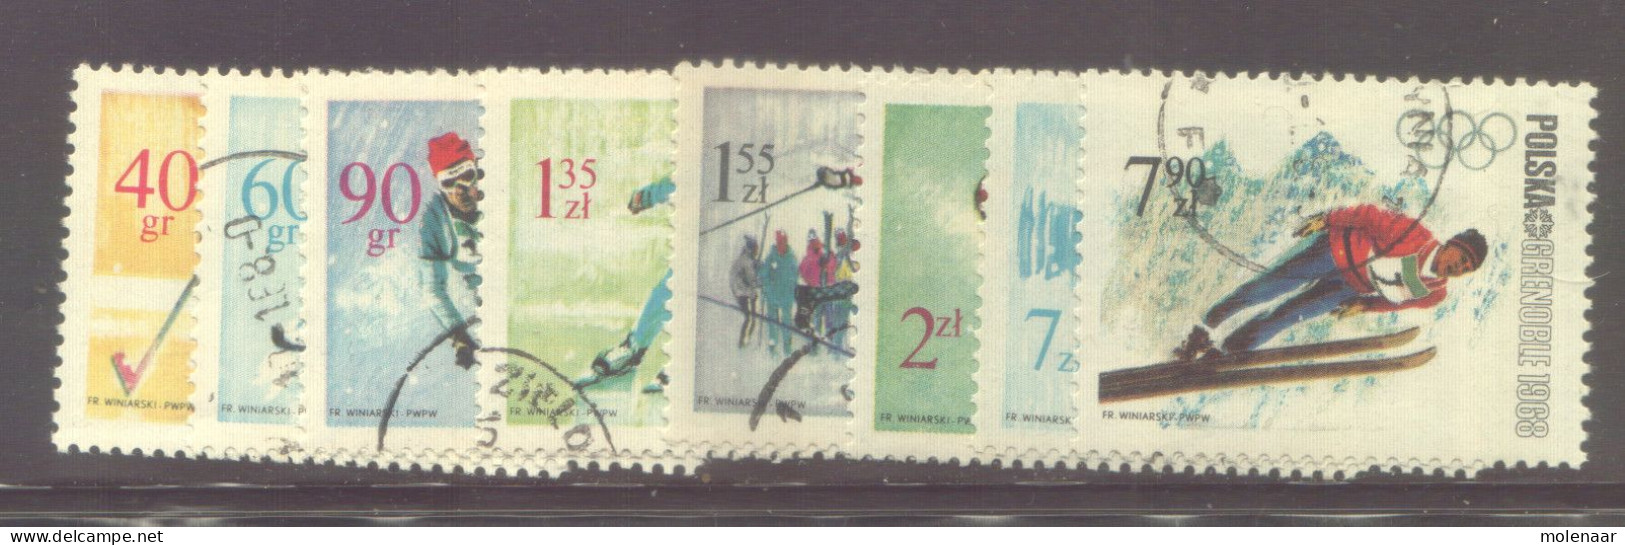 Postzegels > Europa > Polen > 1944-.... Republiek > 1961-70 > Gebruikt No. 1815-1822 (12007) - Oblitérés